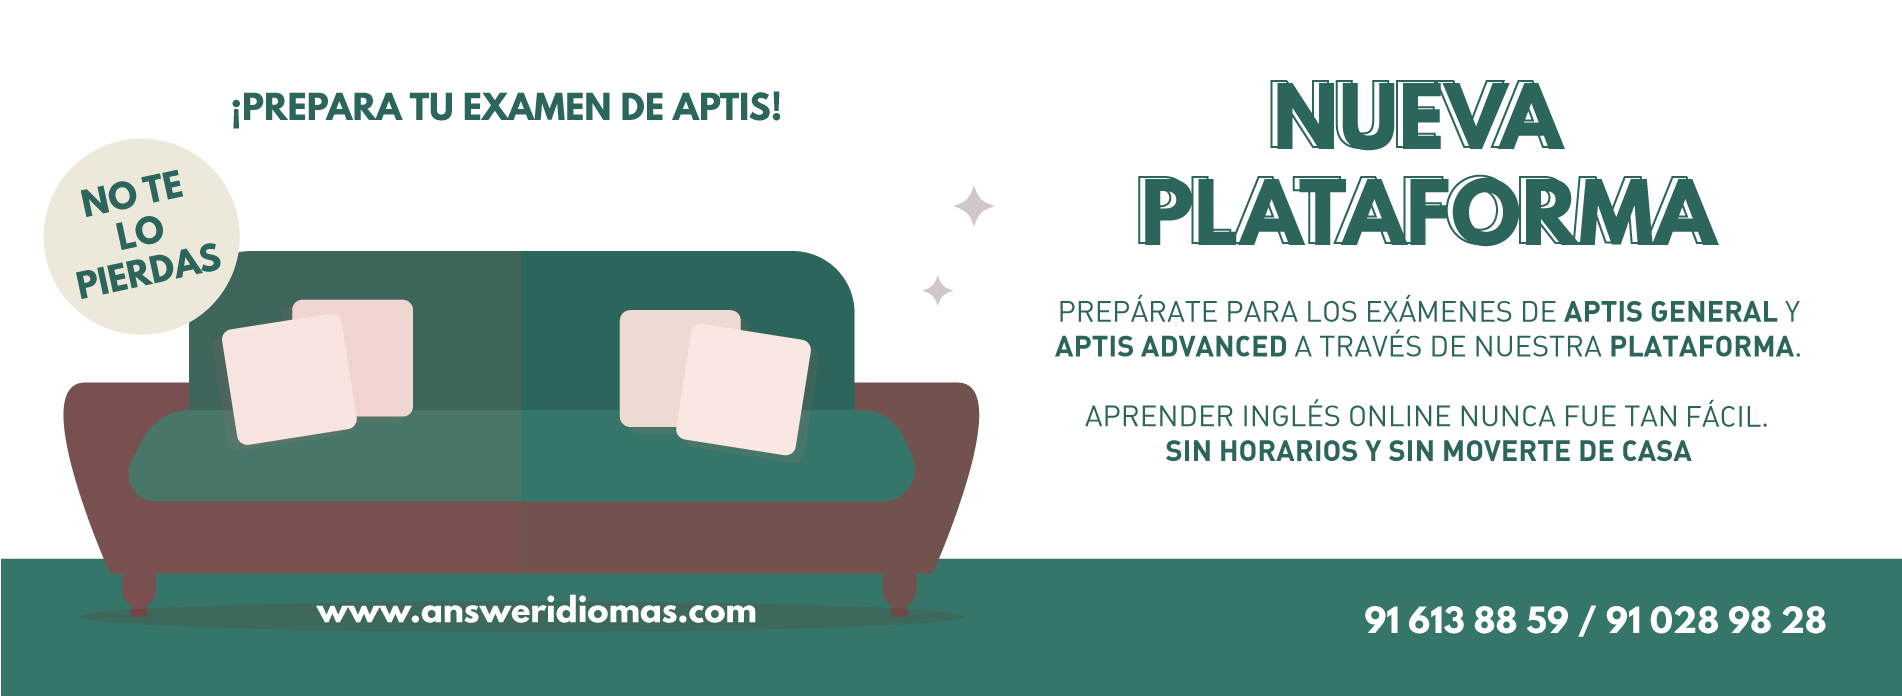 Aptis_nueva_plataforma